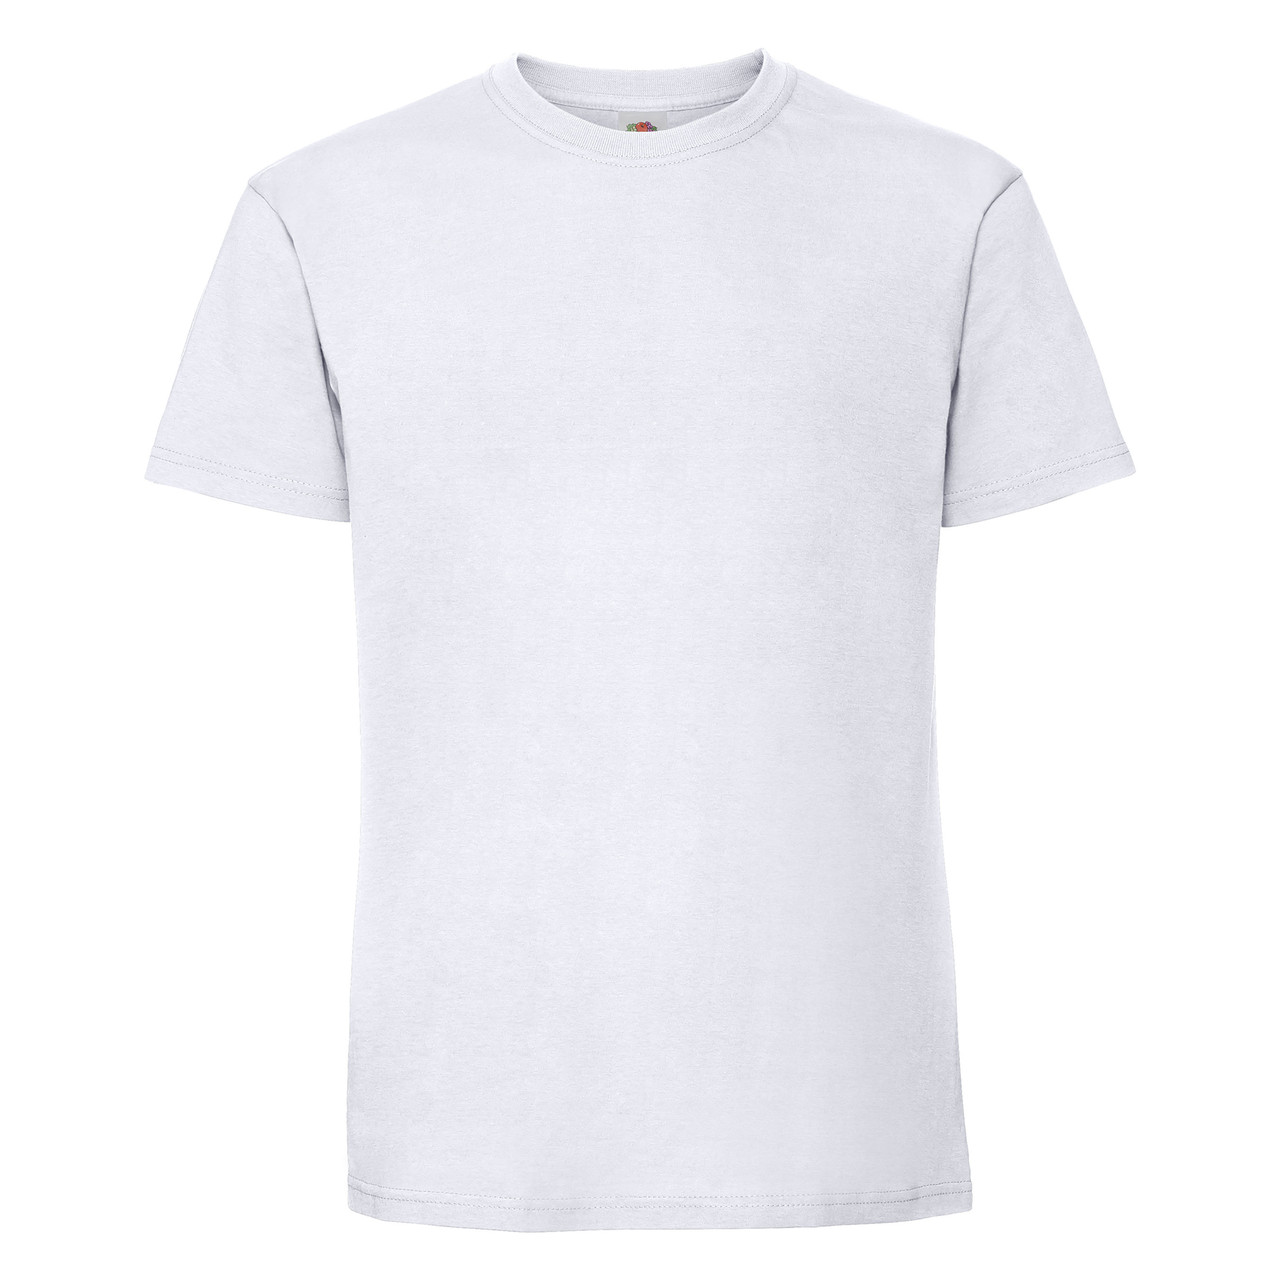 Чоловіча футболка щільна м'яка Біла Fruit of the loom 61-422-30 4XL, фото 1